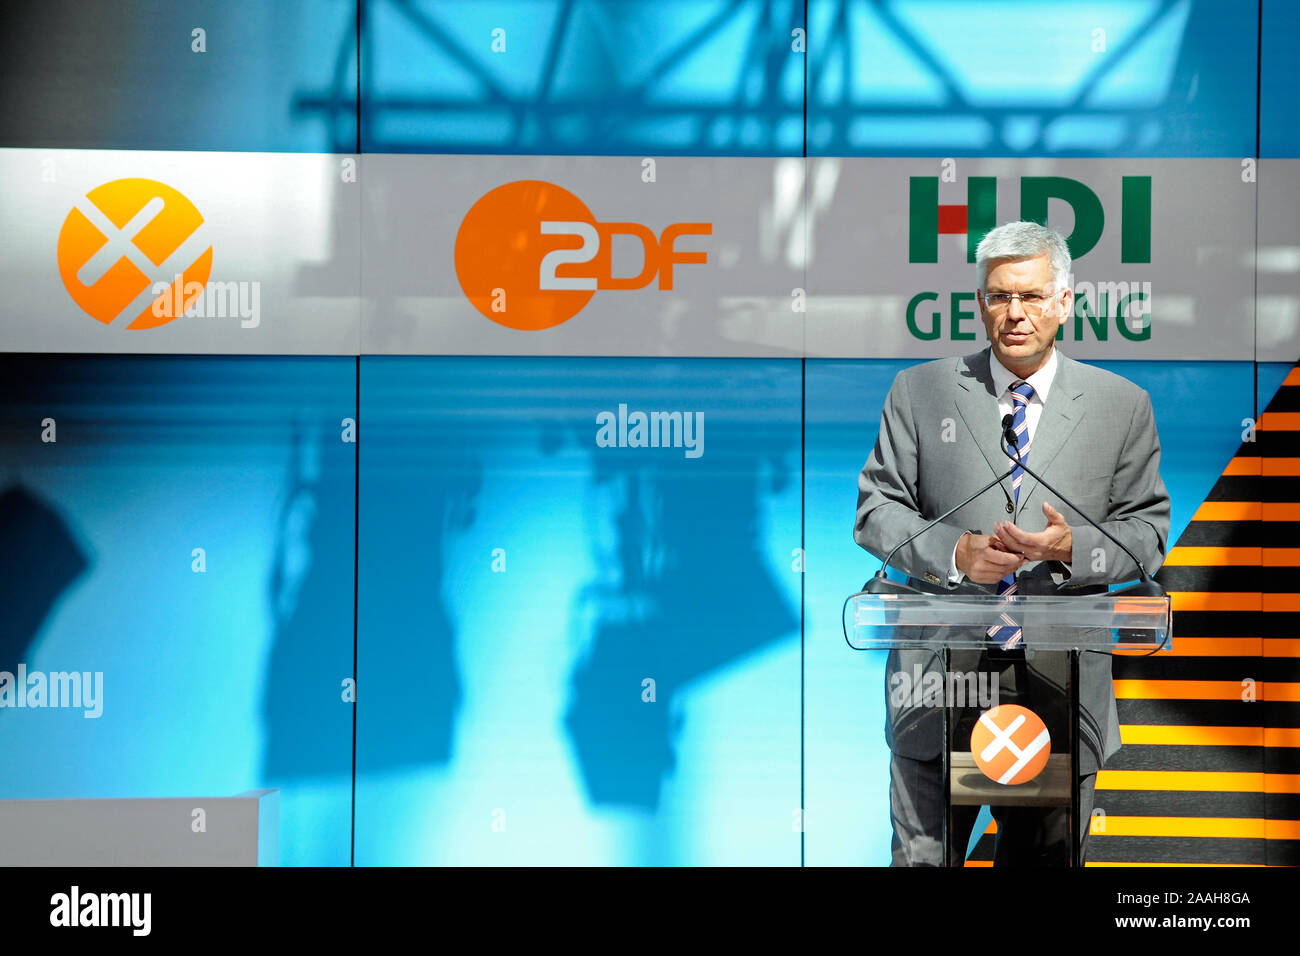 ZDF Programmdirektor Dr. Thomas Bellut anlaesslich des Preises der Preisverleihung XY an die Sendung Preistraeger 2009 der ZDF ungeloe Aktenzeichen XY Foto de stock